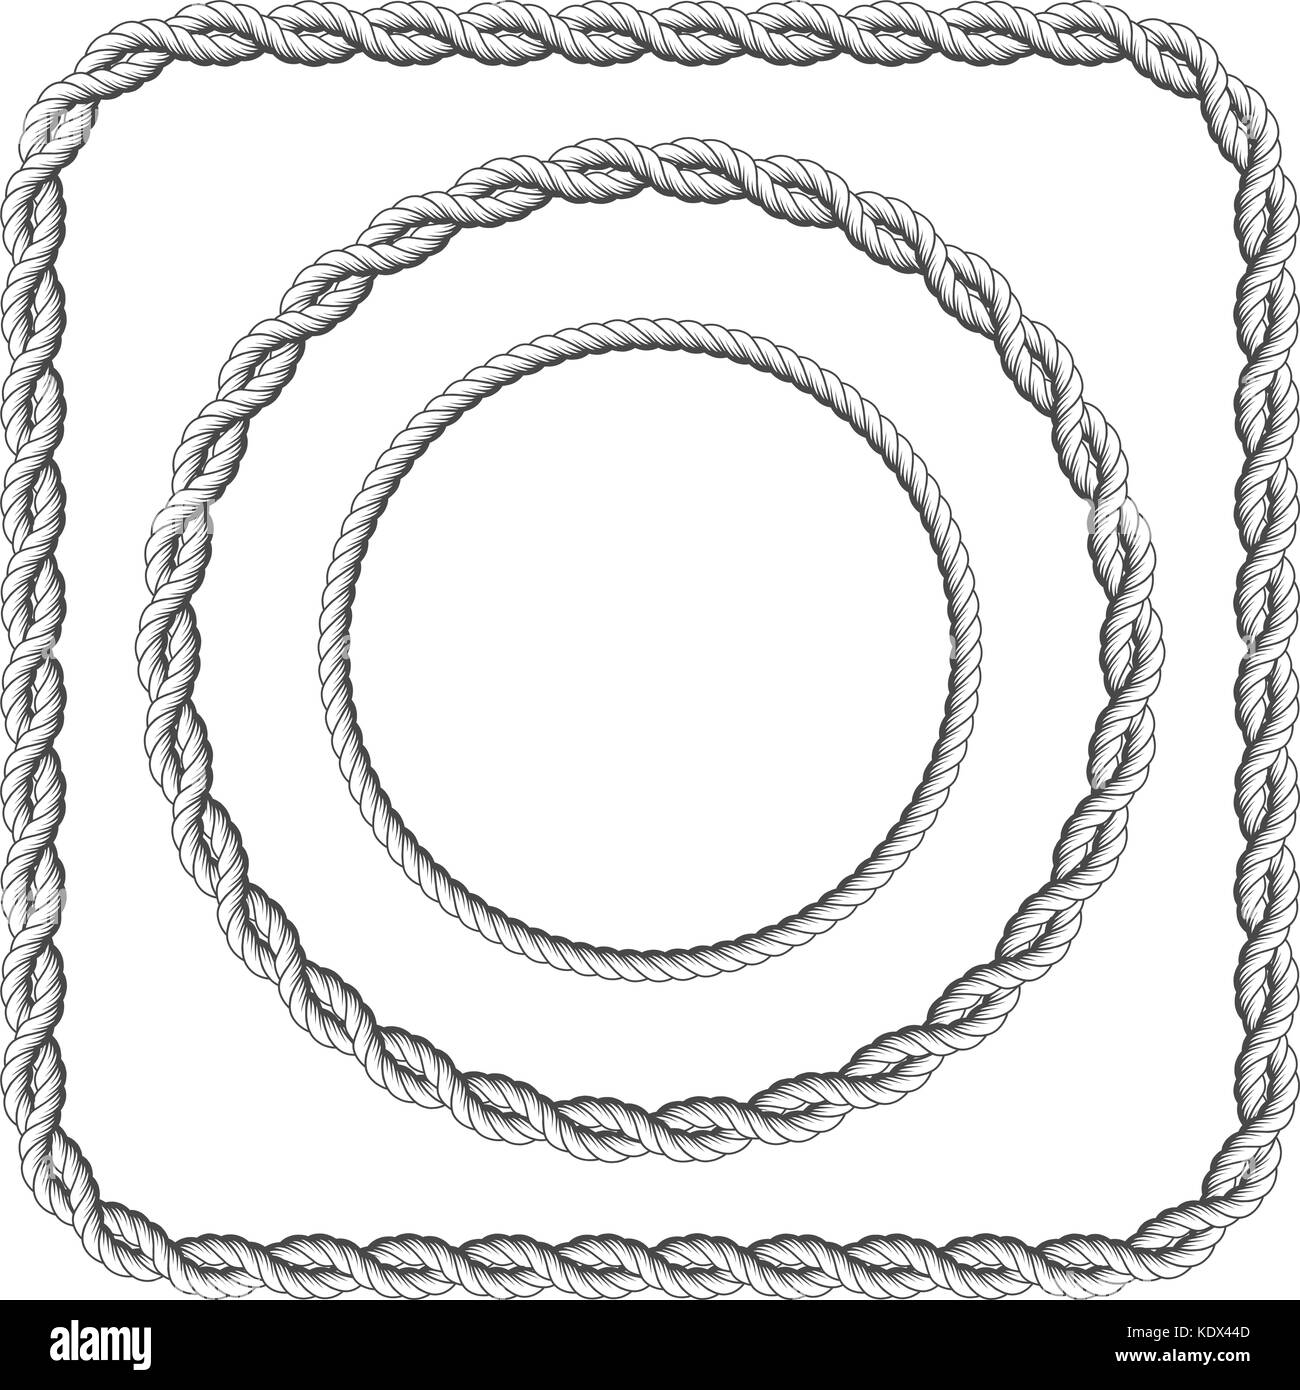 Frames von twisted Seil mit abgerundeten Ecken Stock Vektor